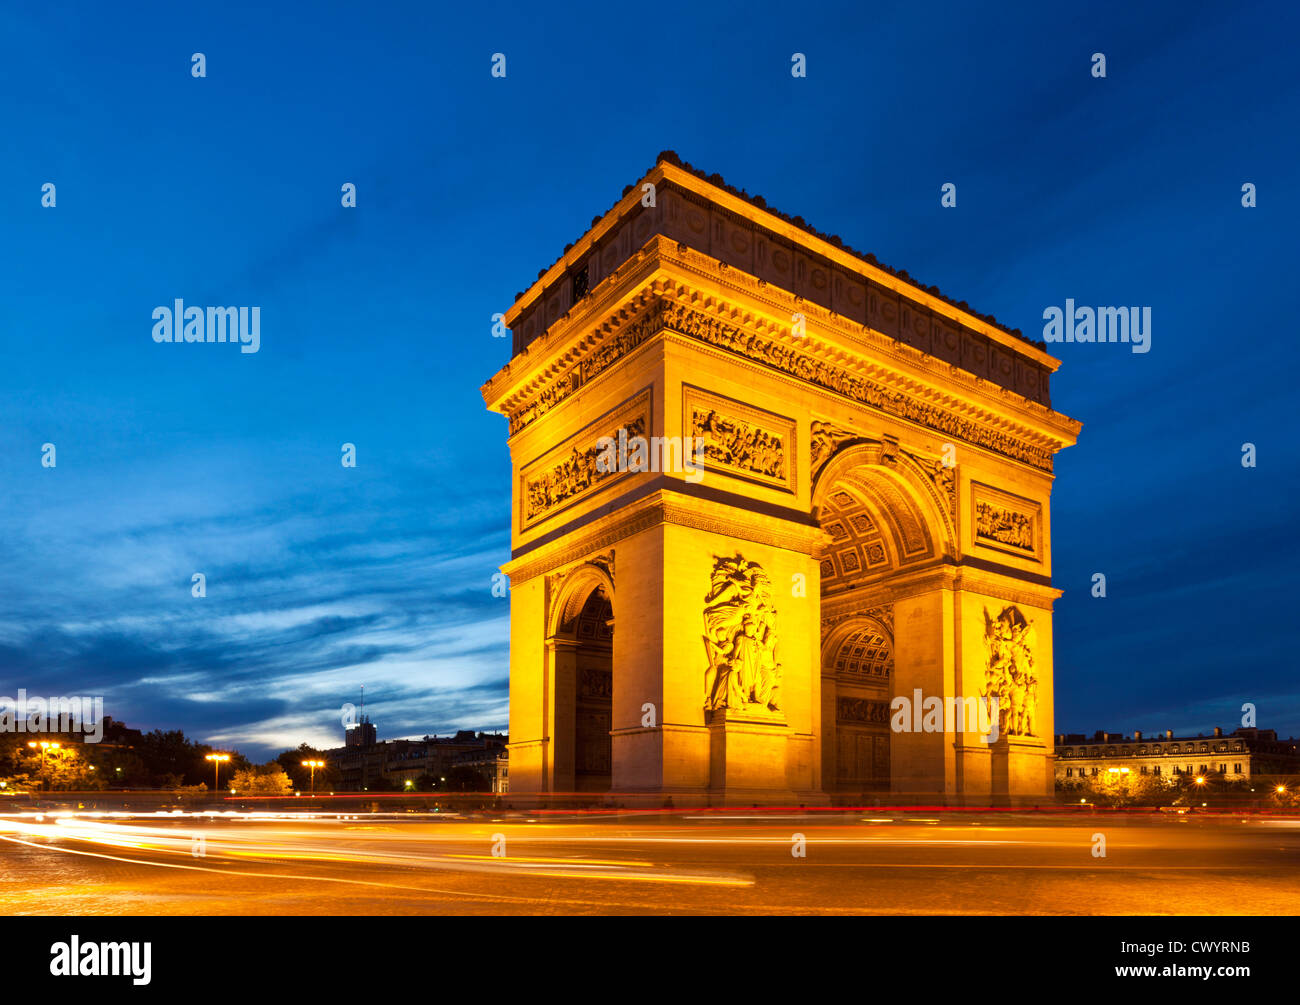 Semáforo senderos alrededor de napoleones Arc de Triomphe Place Charles de Gaulle Champs Elysees Paris Francia Europa UE Foto de stock